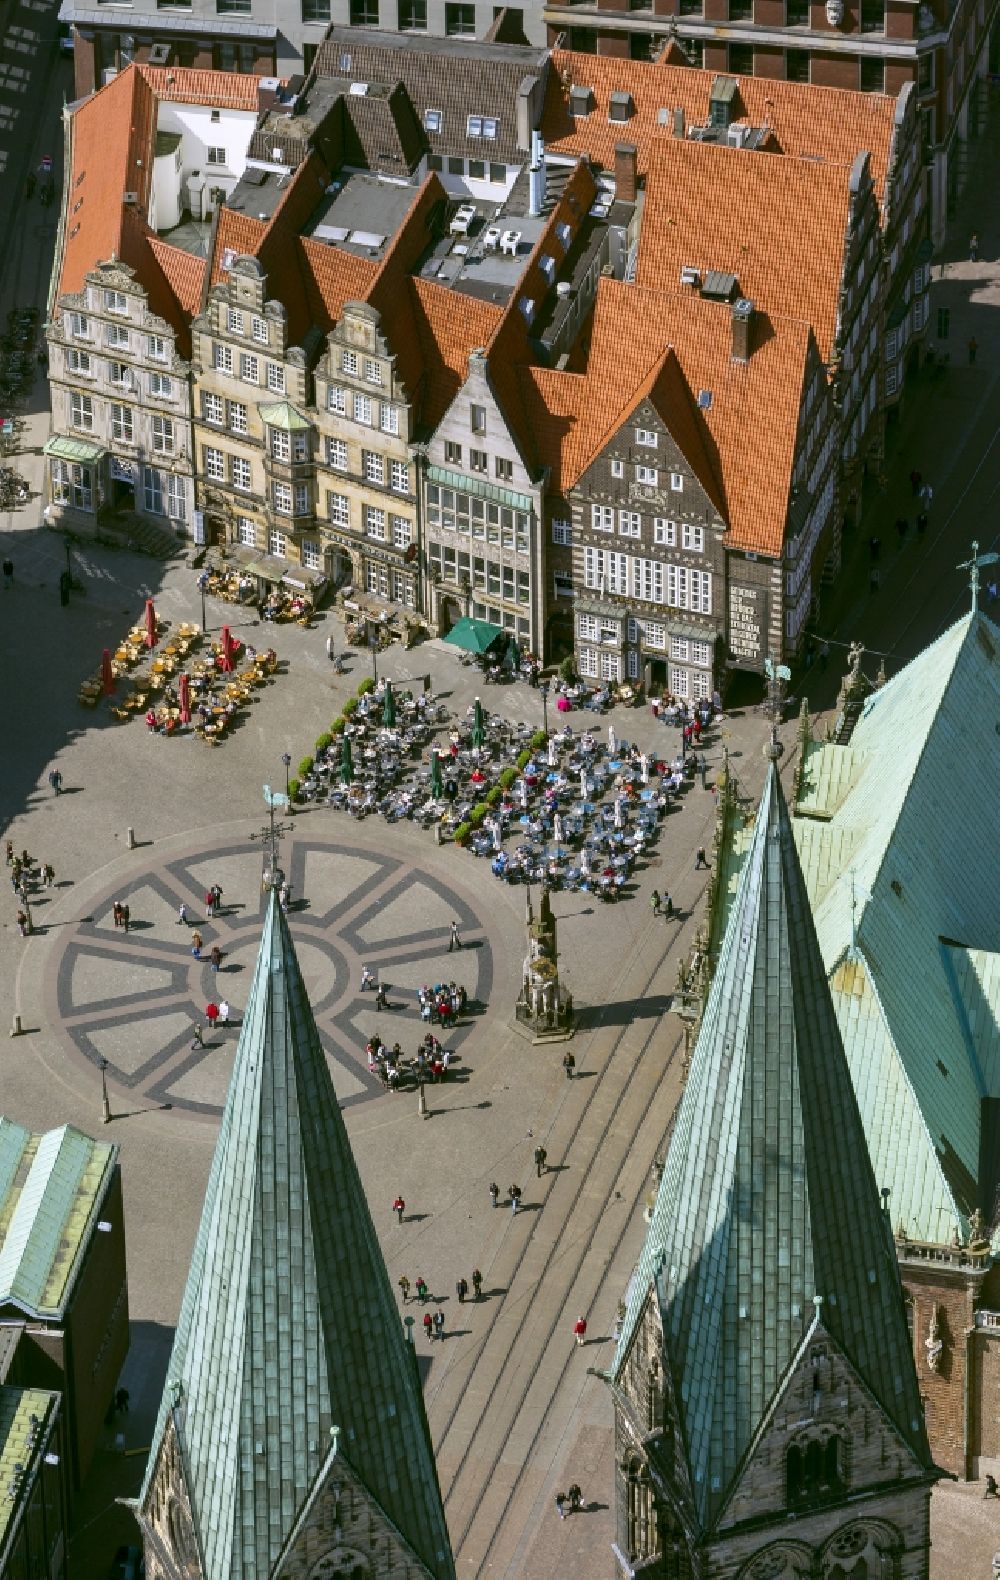 Bremen aus der Vogelperspektive: Menschenansammlungen an Cafétischen und Freiluftrestaurants auf dem Marktplatz in Bremen